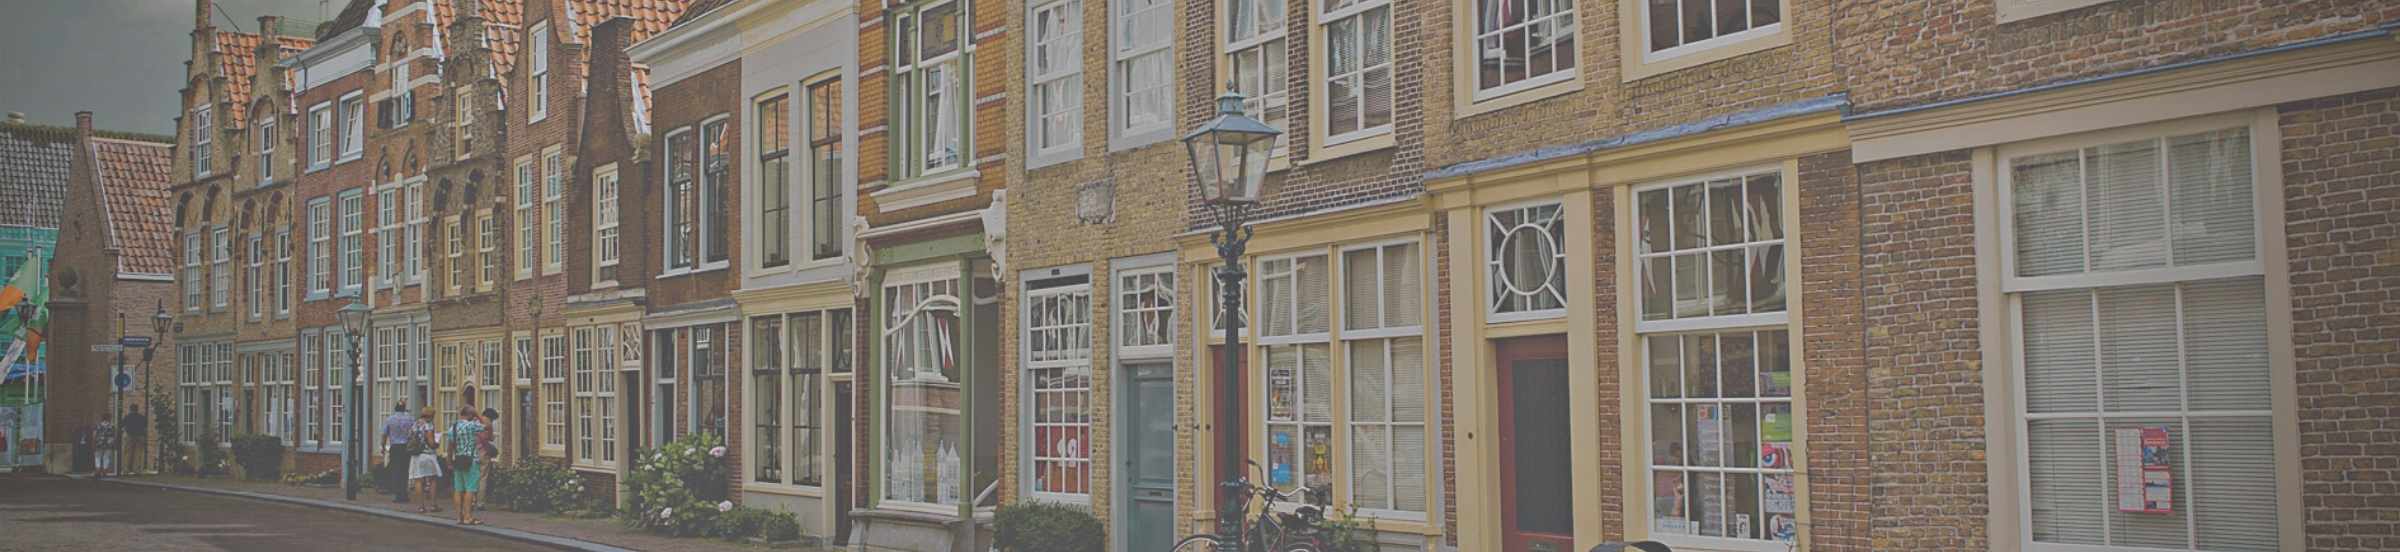 Straat in Dordrecht